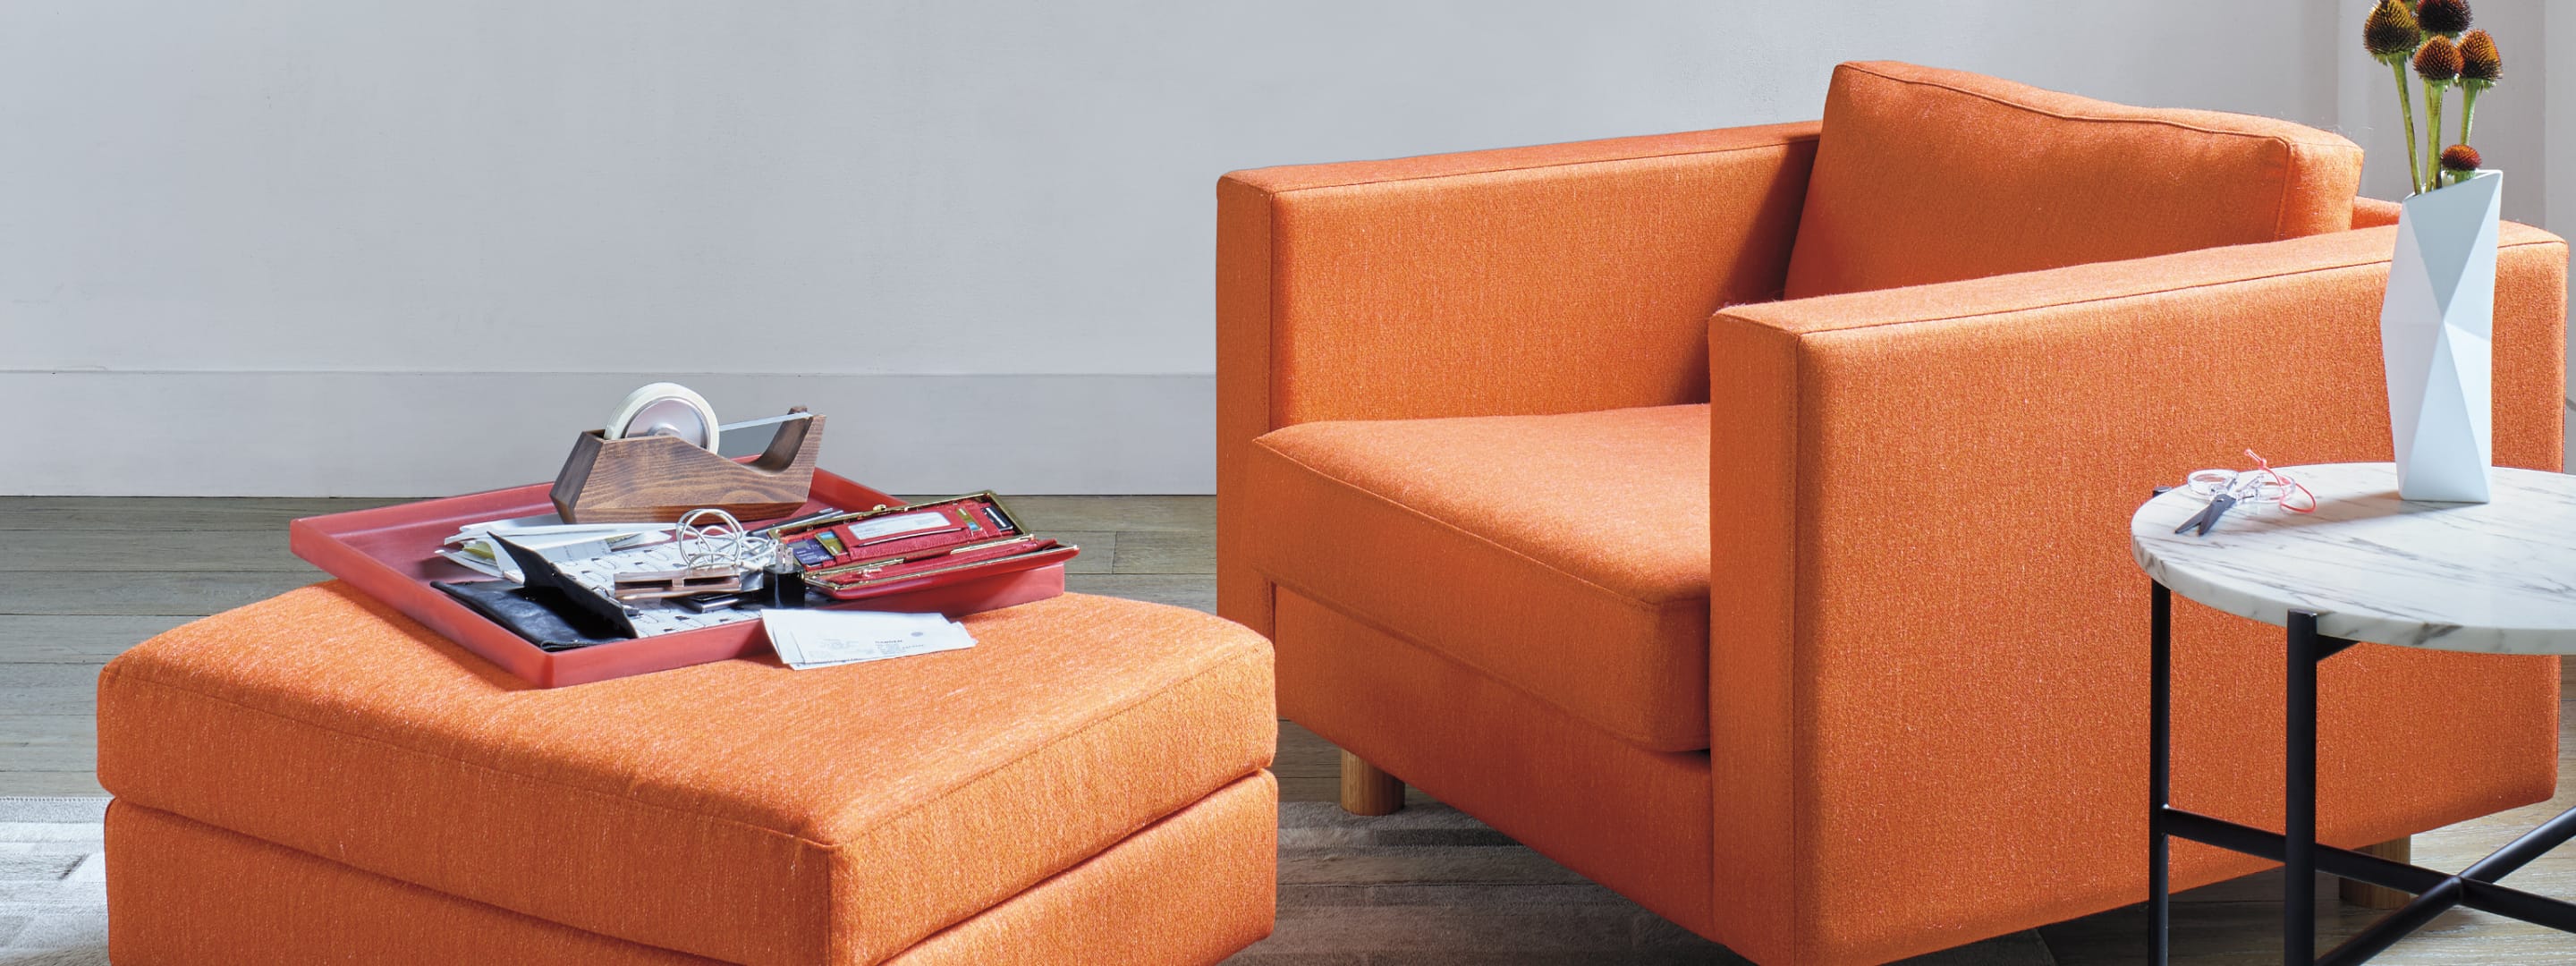 Fauteuil lounge coloré Lispenard avec repose-pieds dans un salon.